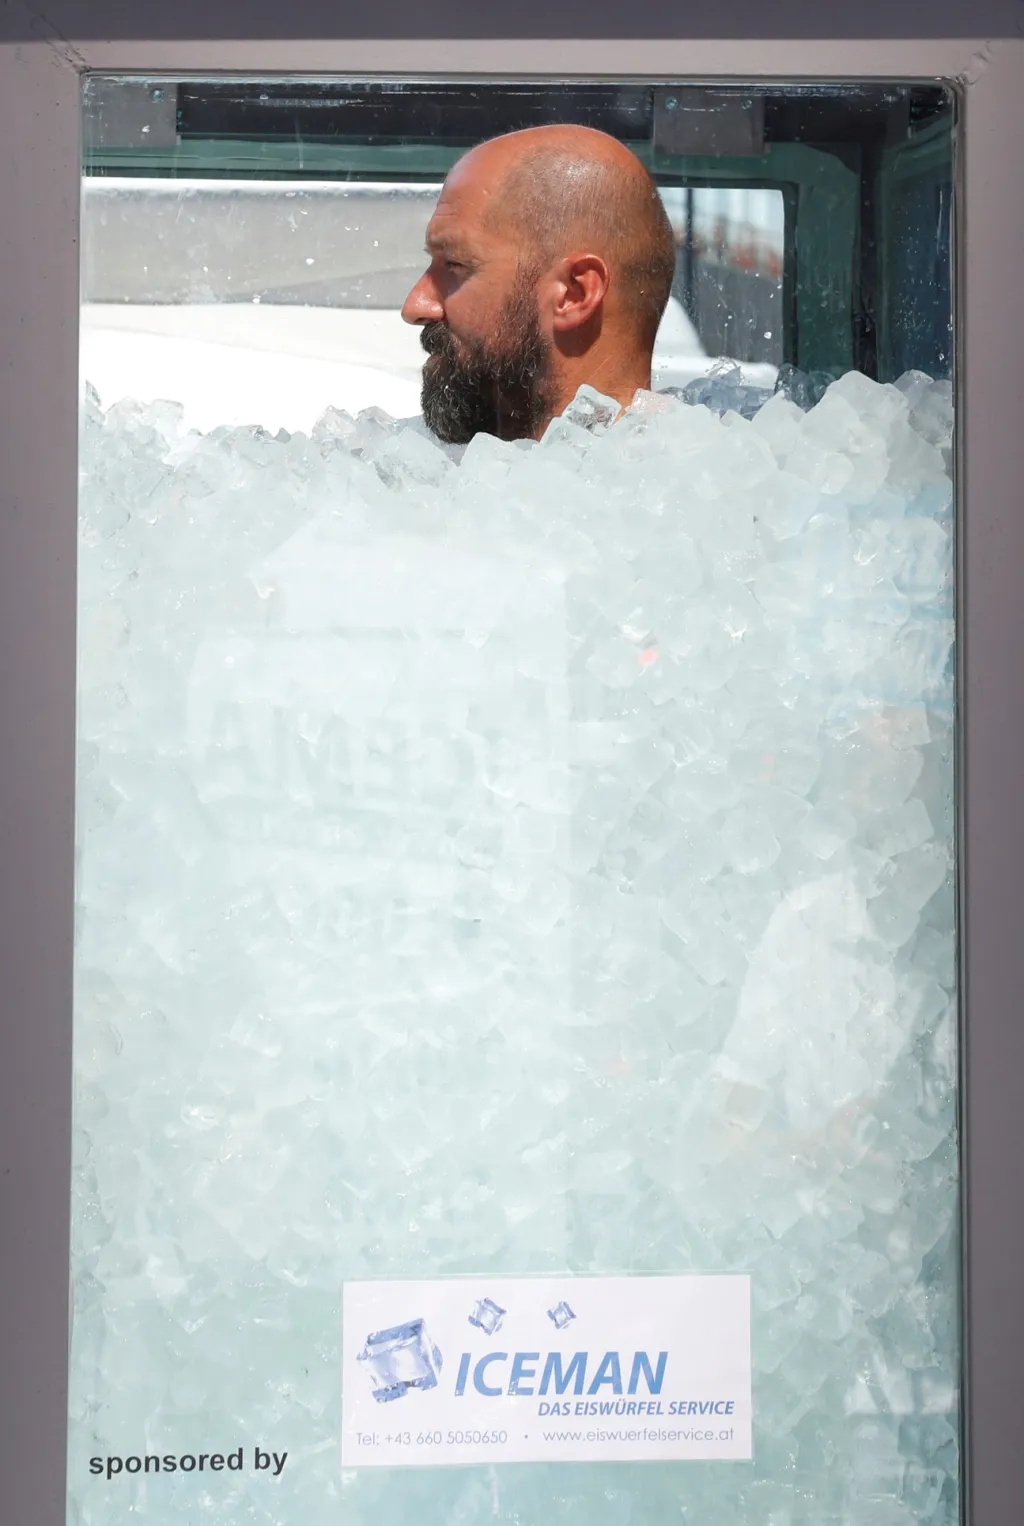 Rakouský otužilec Josef Koeberl se zahrabaný v ledu uvnitř skleněné kostky pokusil překonat světový rekord v setrvání v tomto prostředí bez oblečení